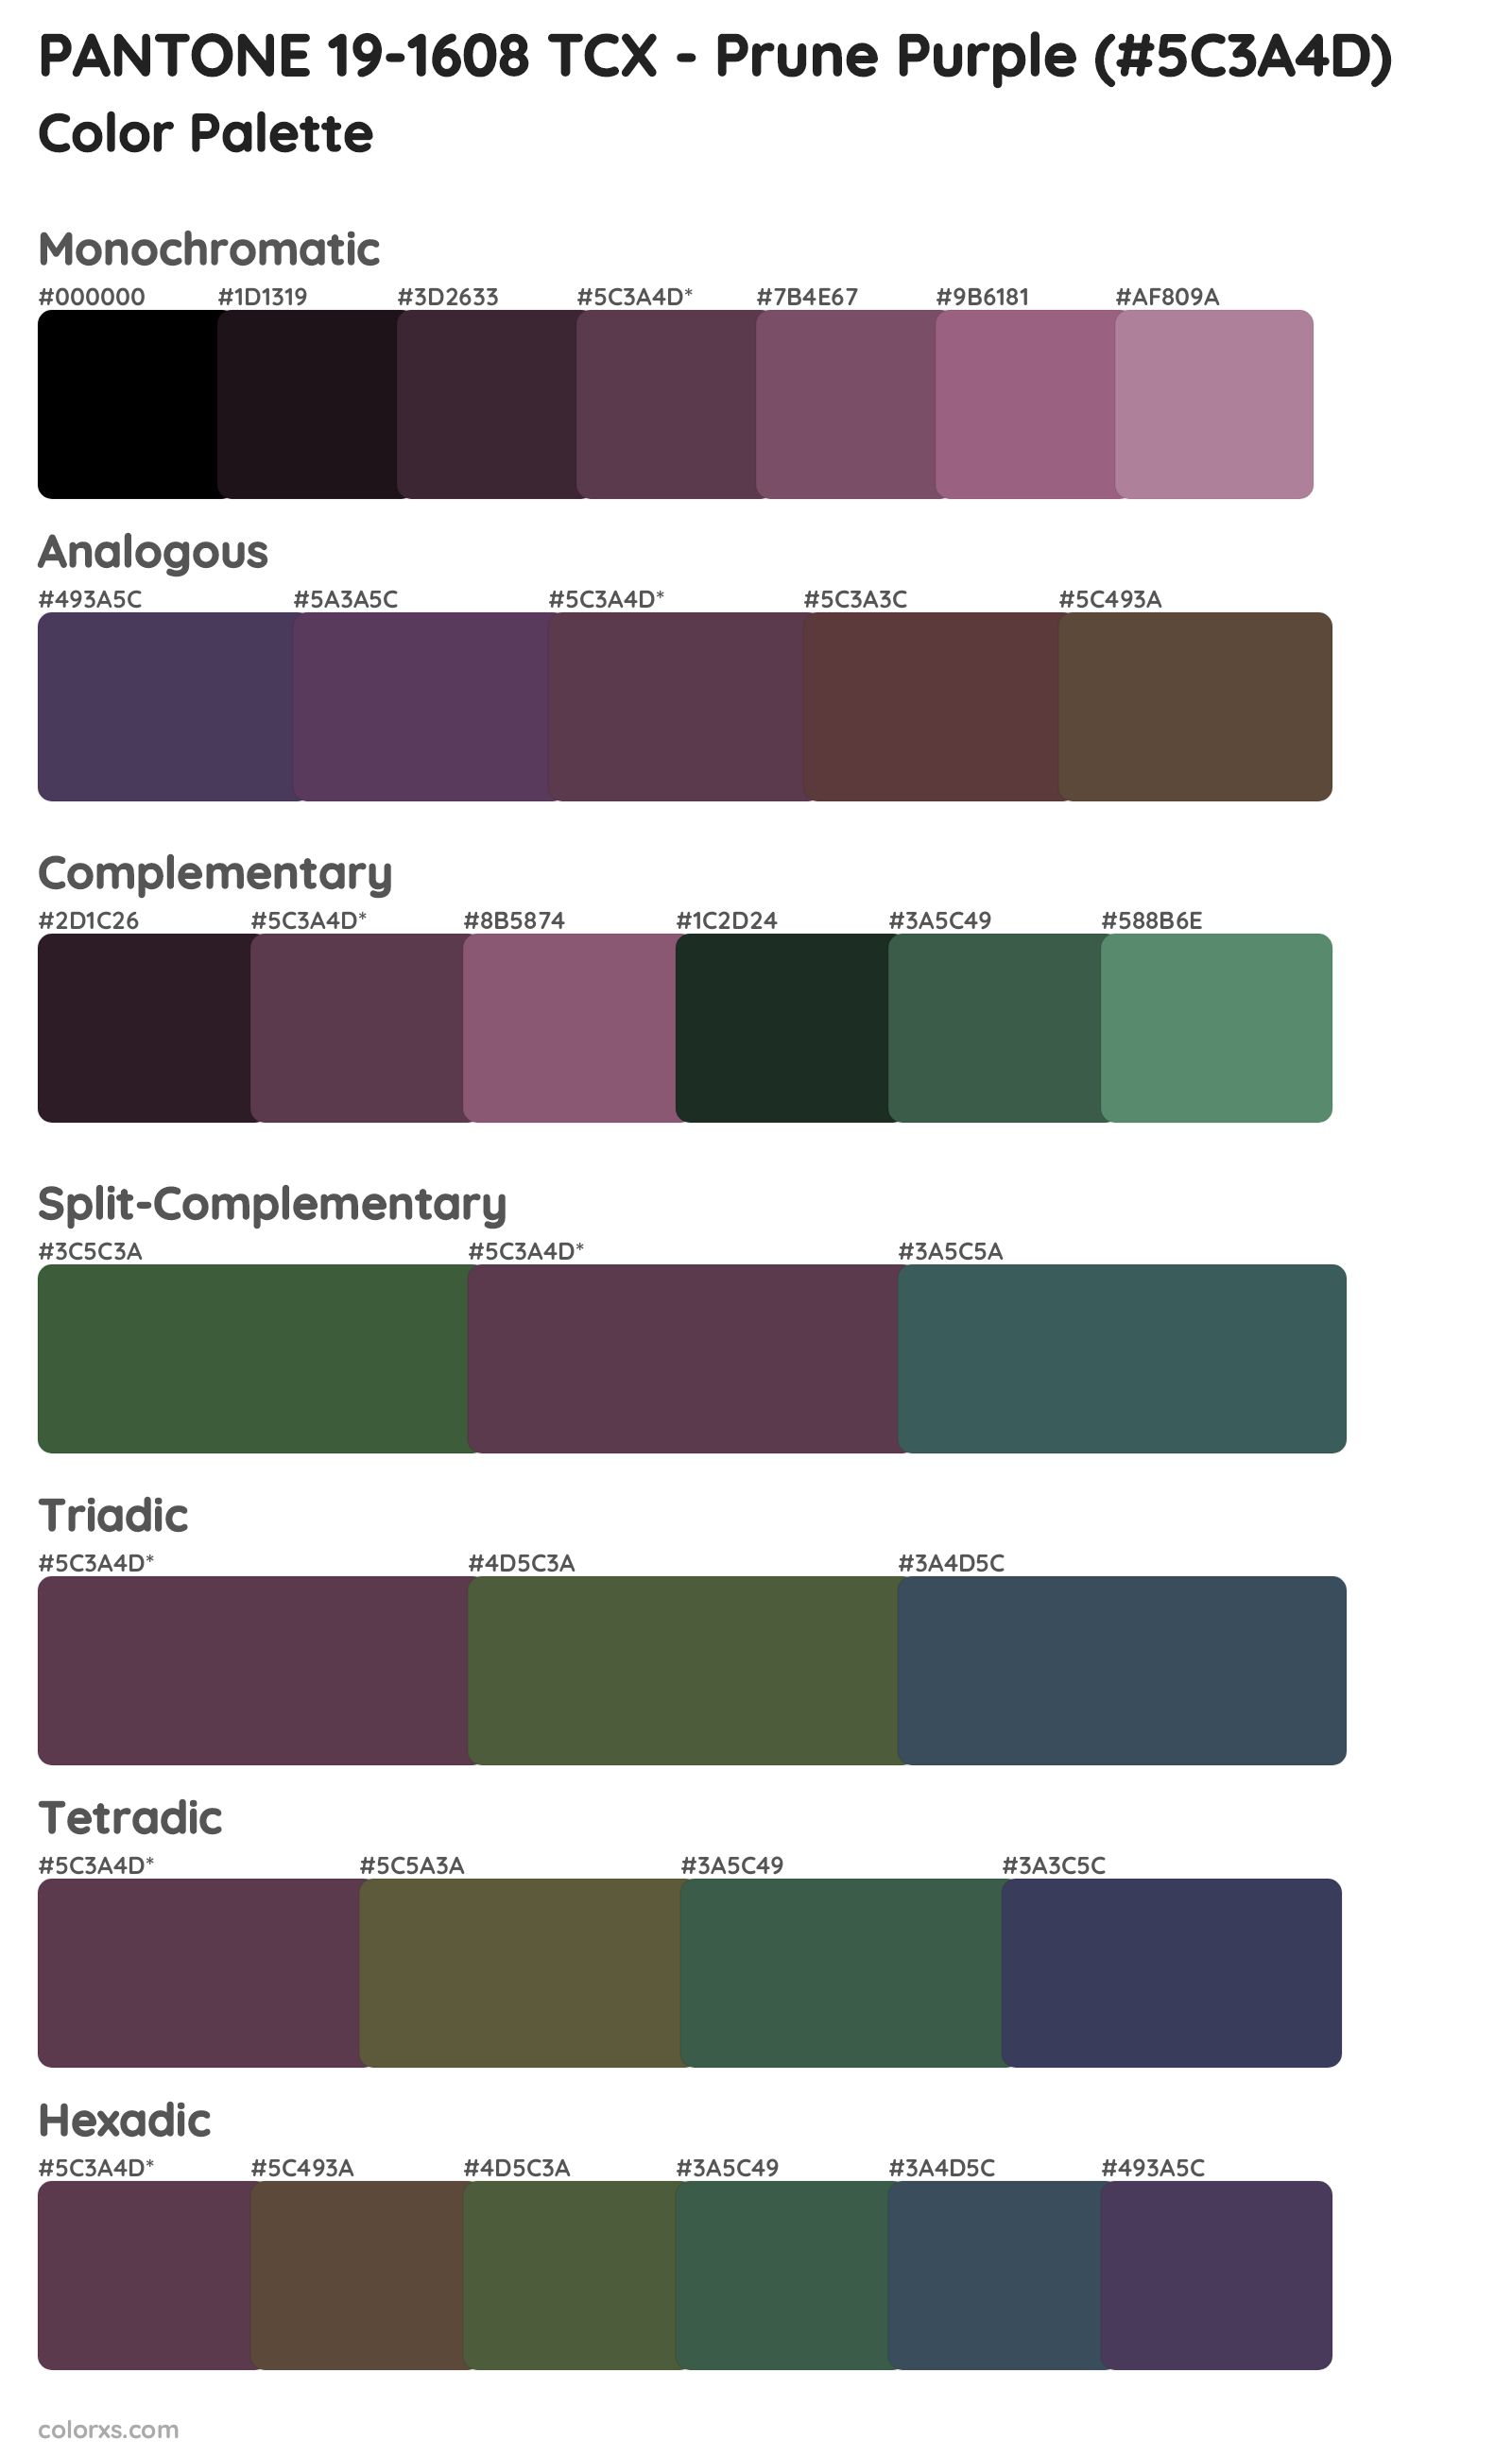 PANTONE 19-1608 TCX - Prune Purple Color Scheme Palettes